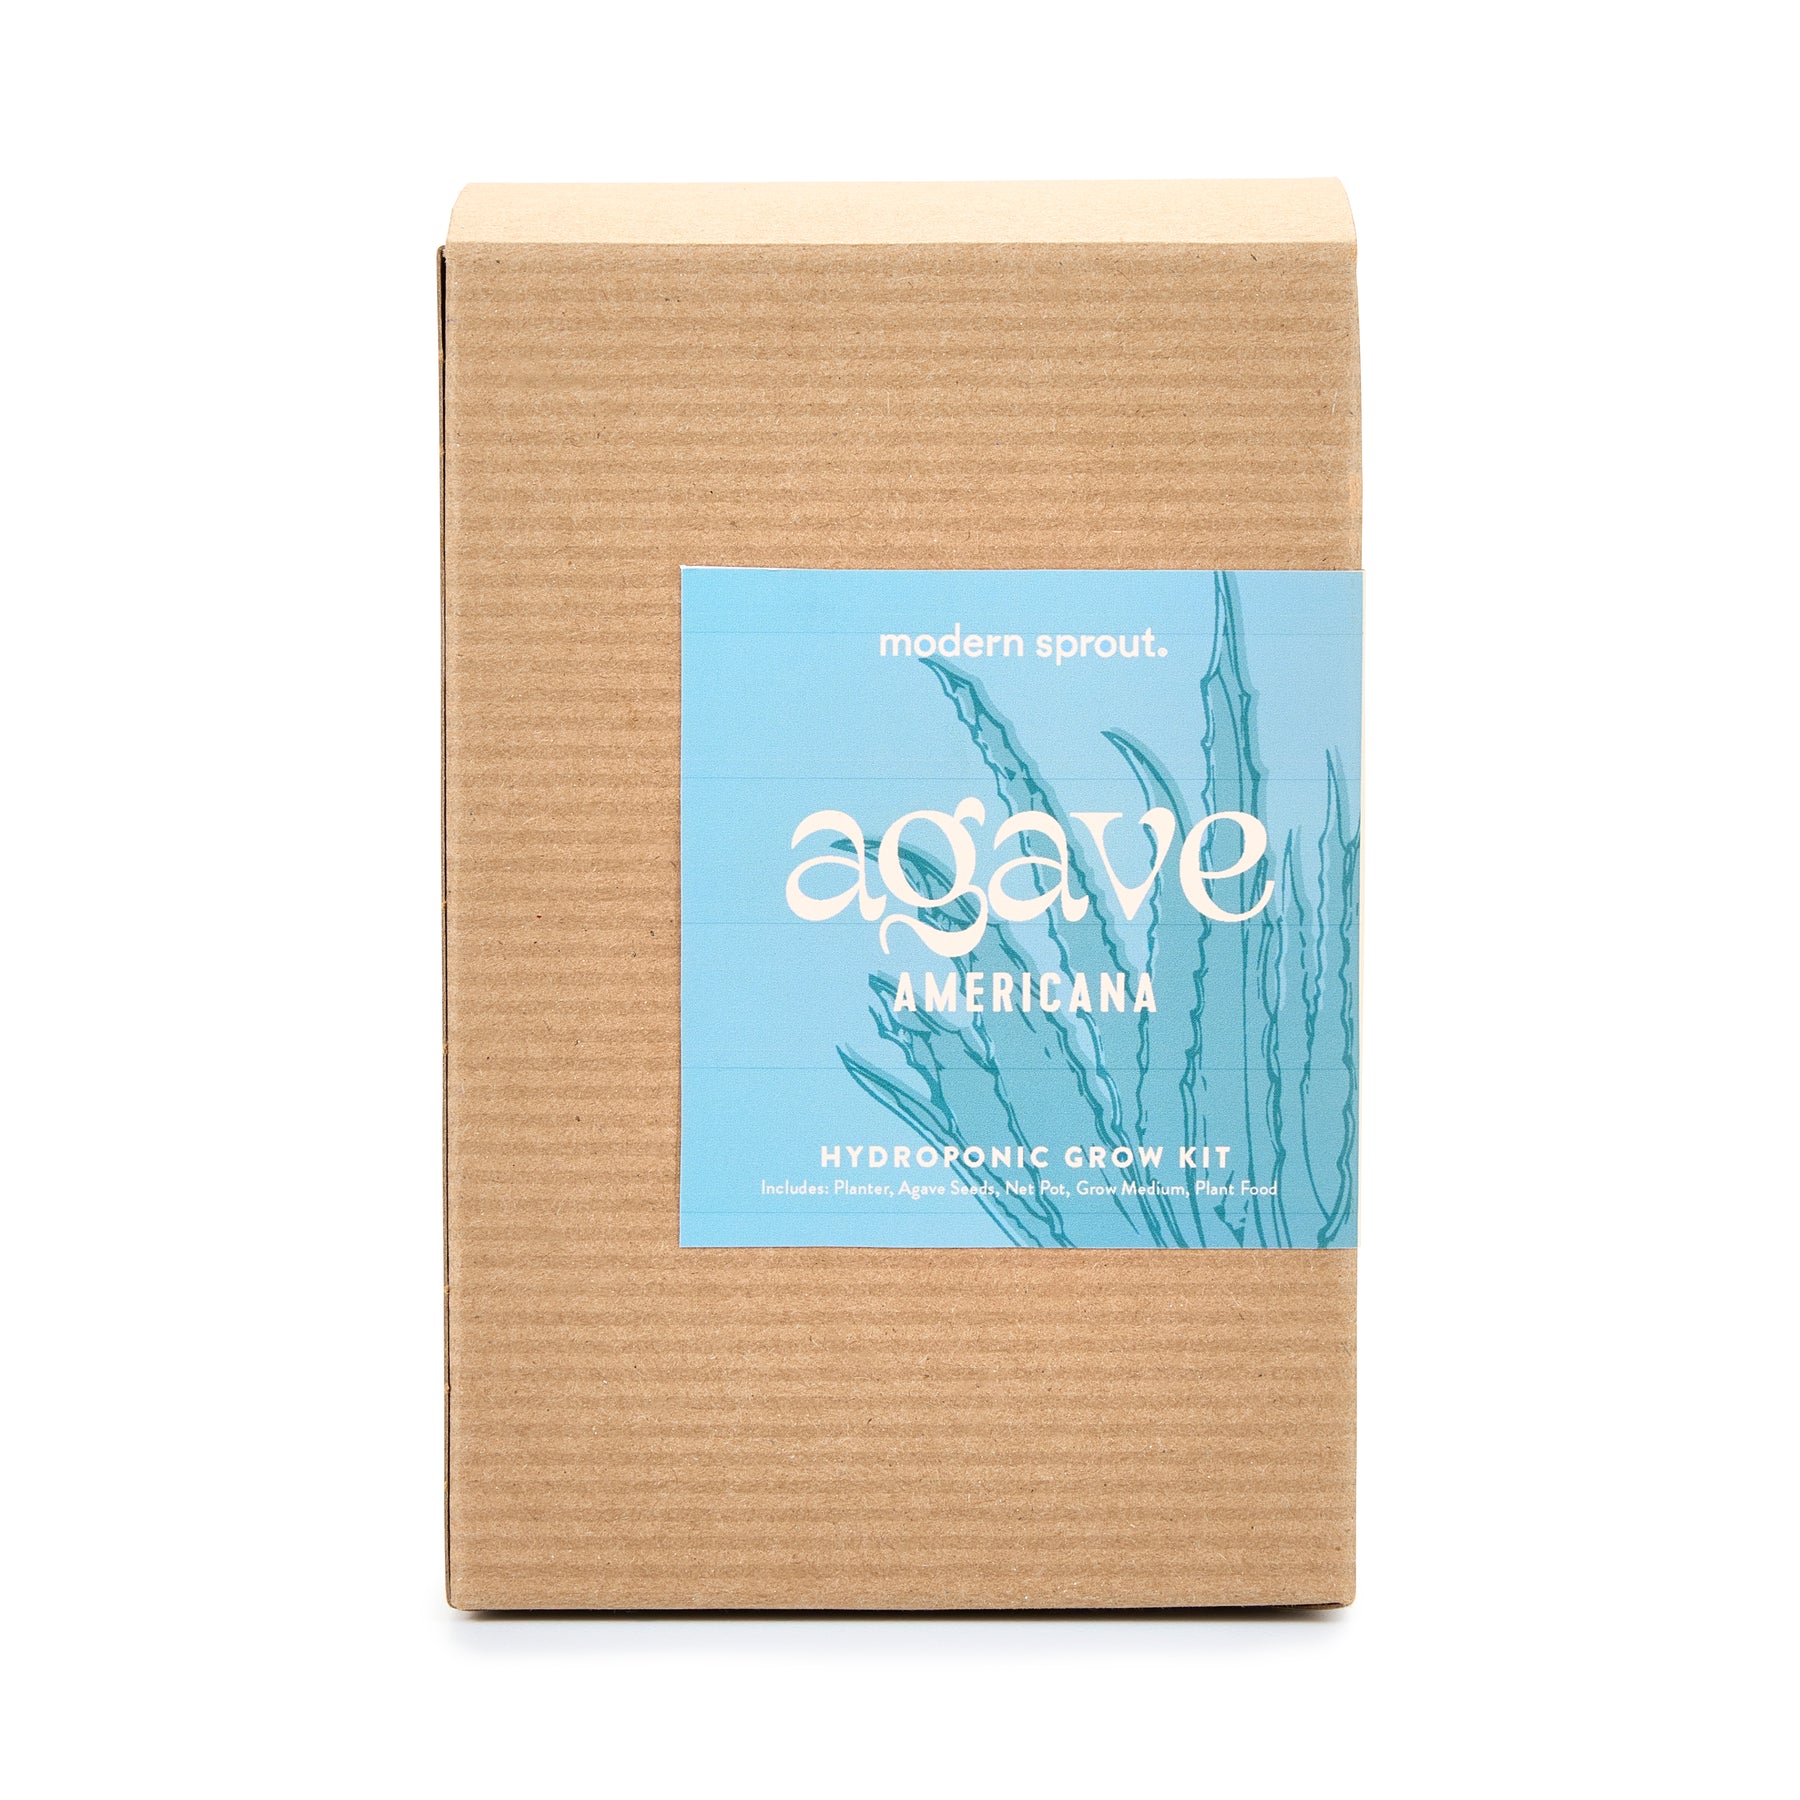 Agave Grow Kit